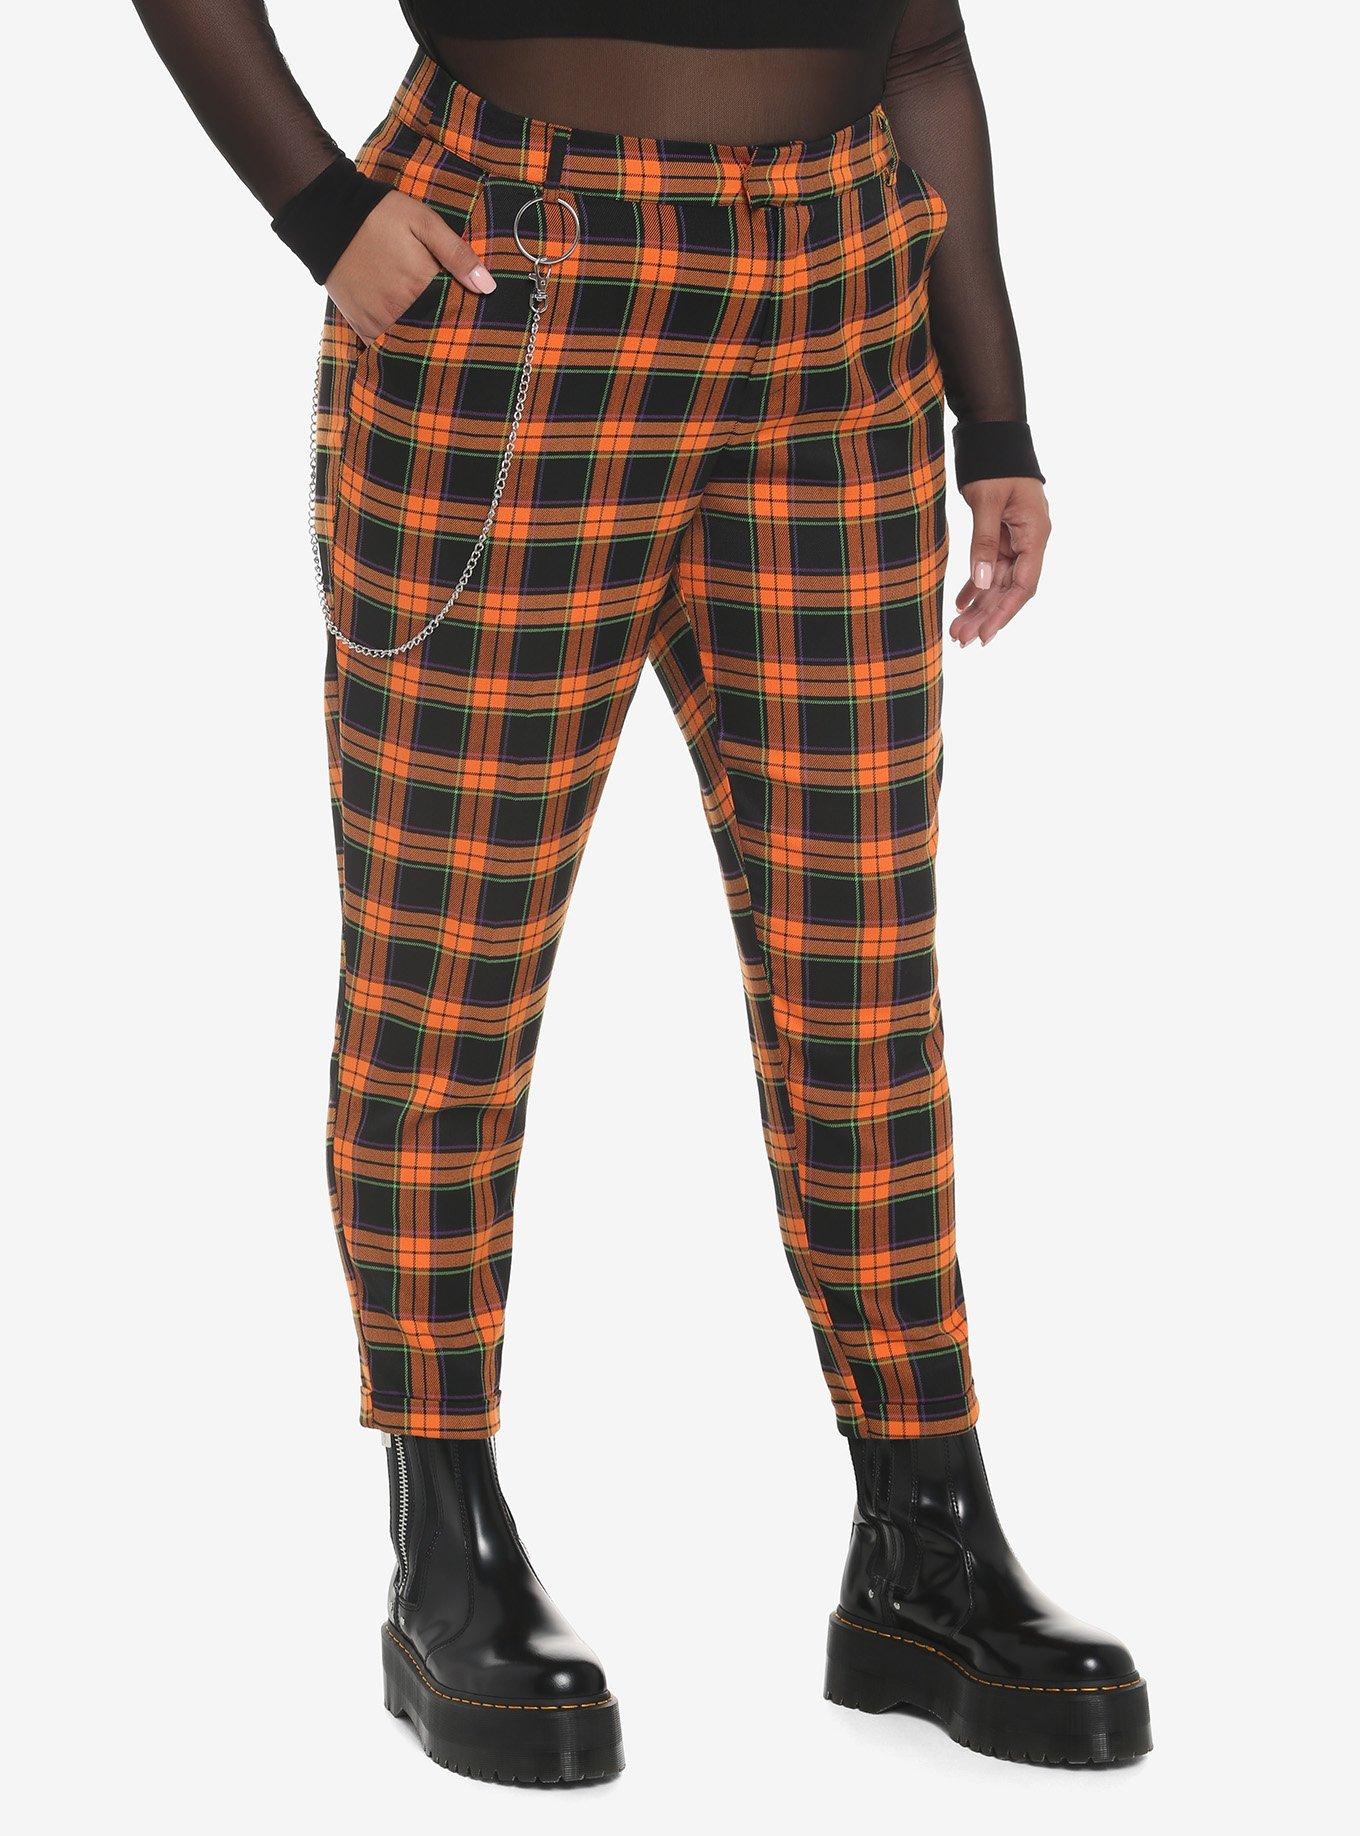 Orange Plaid Side Chain Pants Plus Size